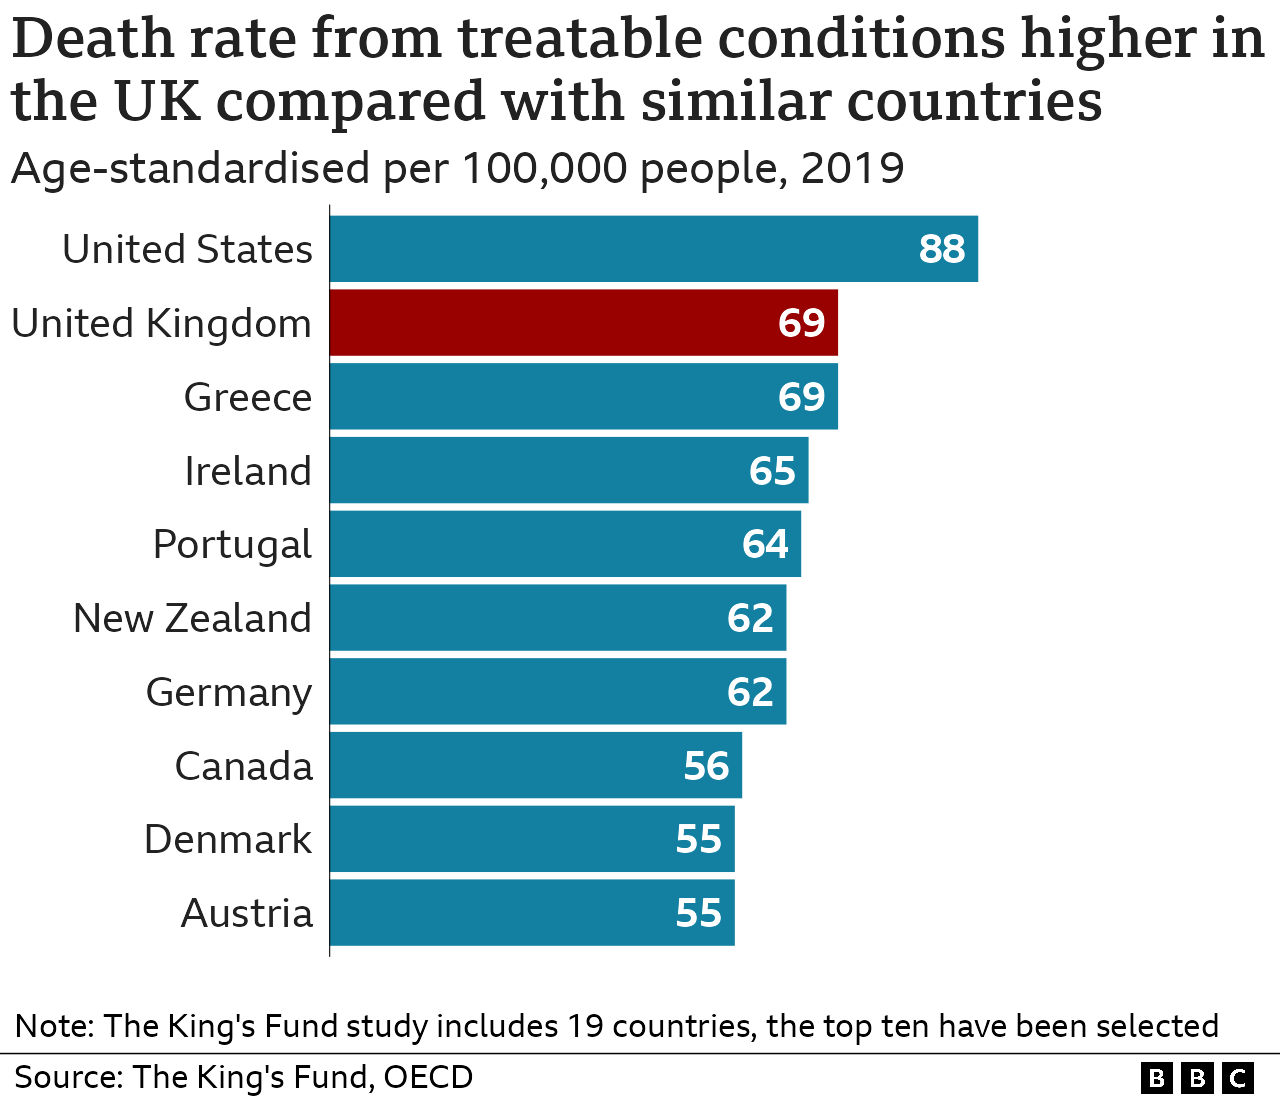 Das Balkendiagramm zeigt, dass die Sterblichkeitsrate aufgrund behandelbarer Krankheiten im Vereinigten Königreich im Vergleich zu ähnlichen Ländern höher ist. Vereinigte Staaten 88 pro 100.000 Einwohner, Vereinigtes Königreich und Griechenland 69, Irland 65, Portugal 64, Neuseeland und Deutschland 62, Kanada 56, Dänemark und Österreich 55